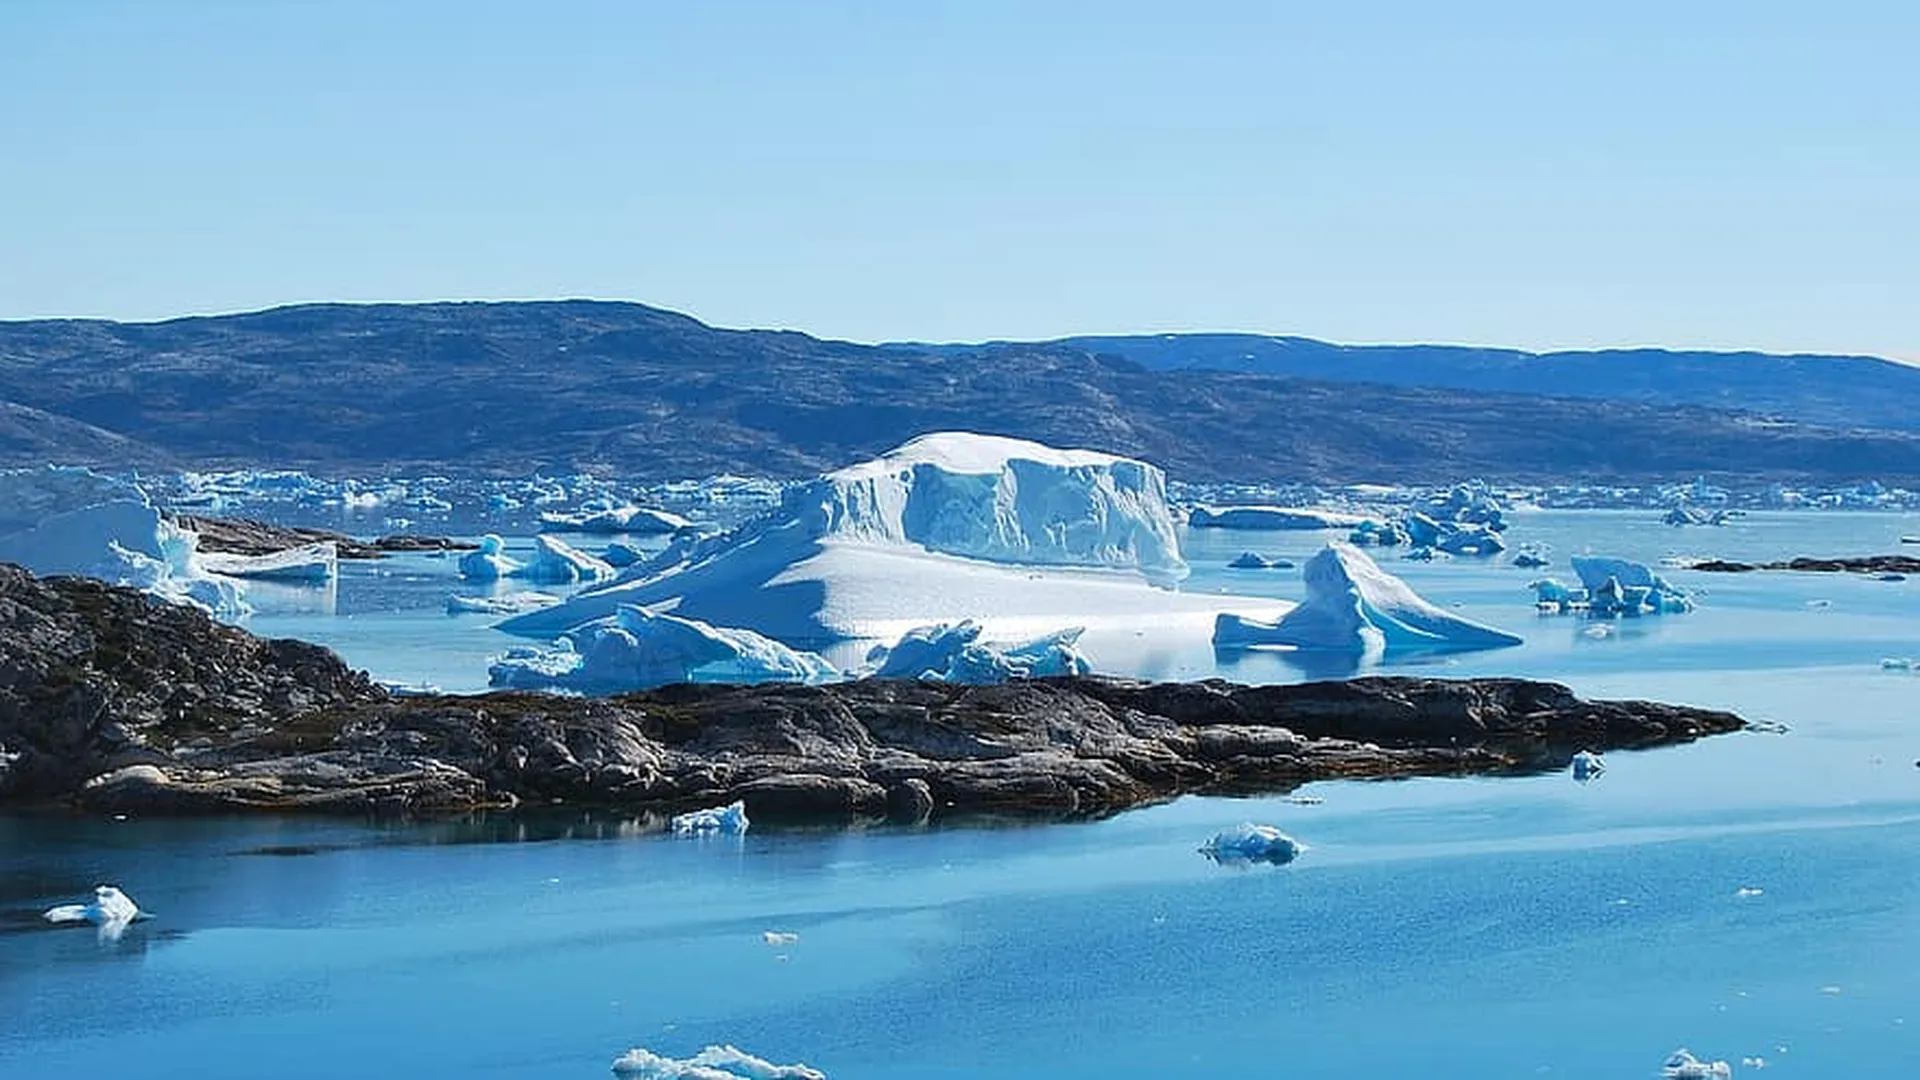 Финляндия может покрыться вечными льдами из-за глобального потепления — ученые